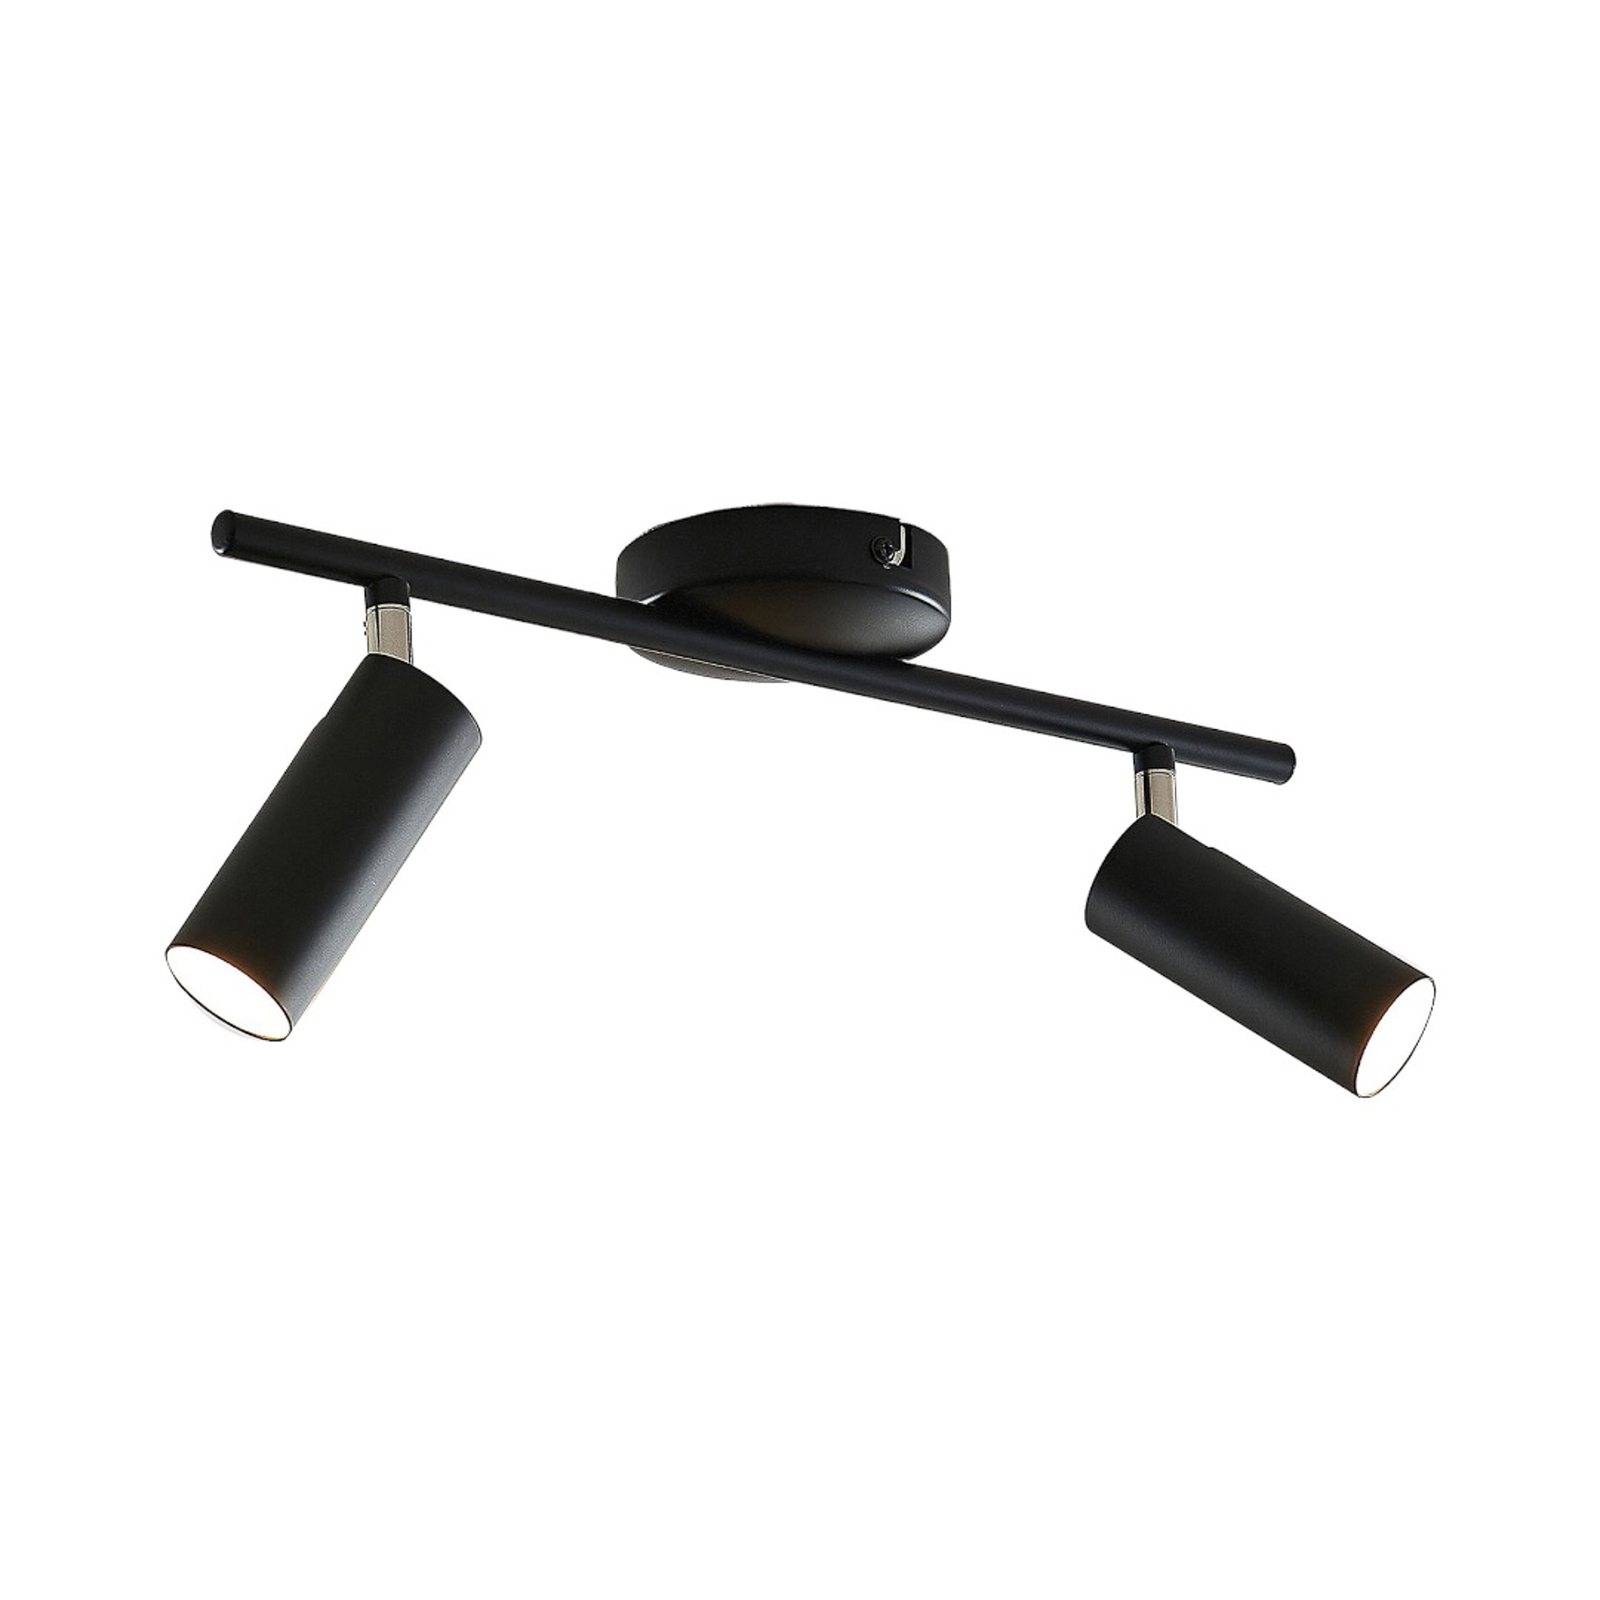 LED plafondlamp Camille, zwart, twee lampjes